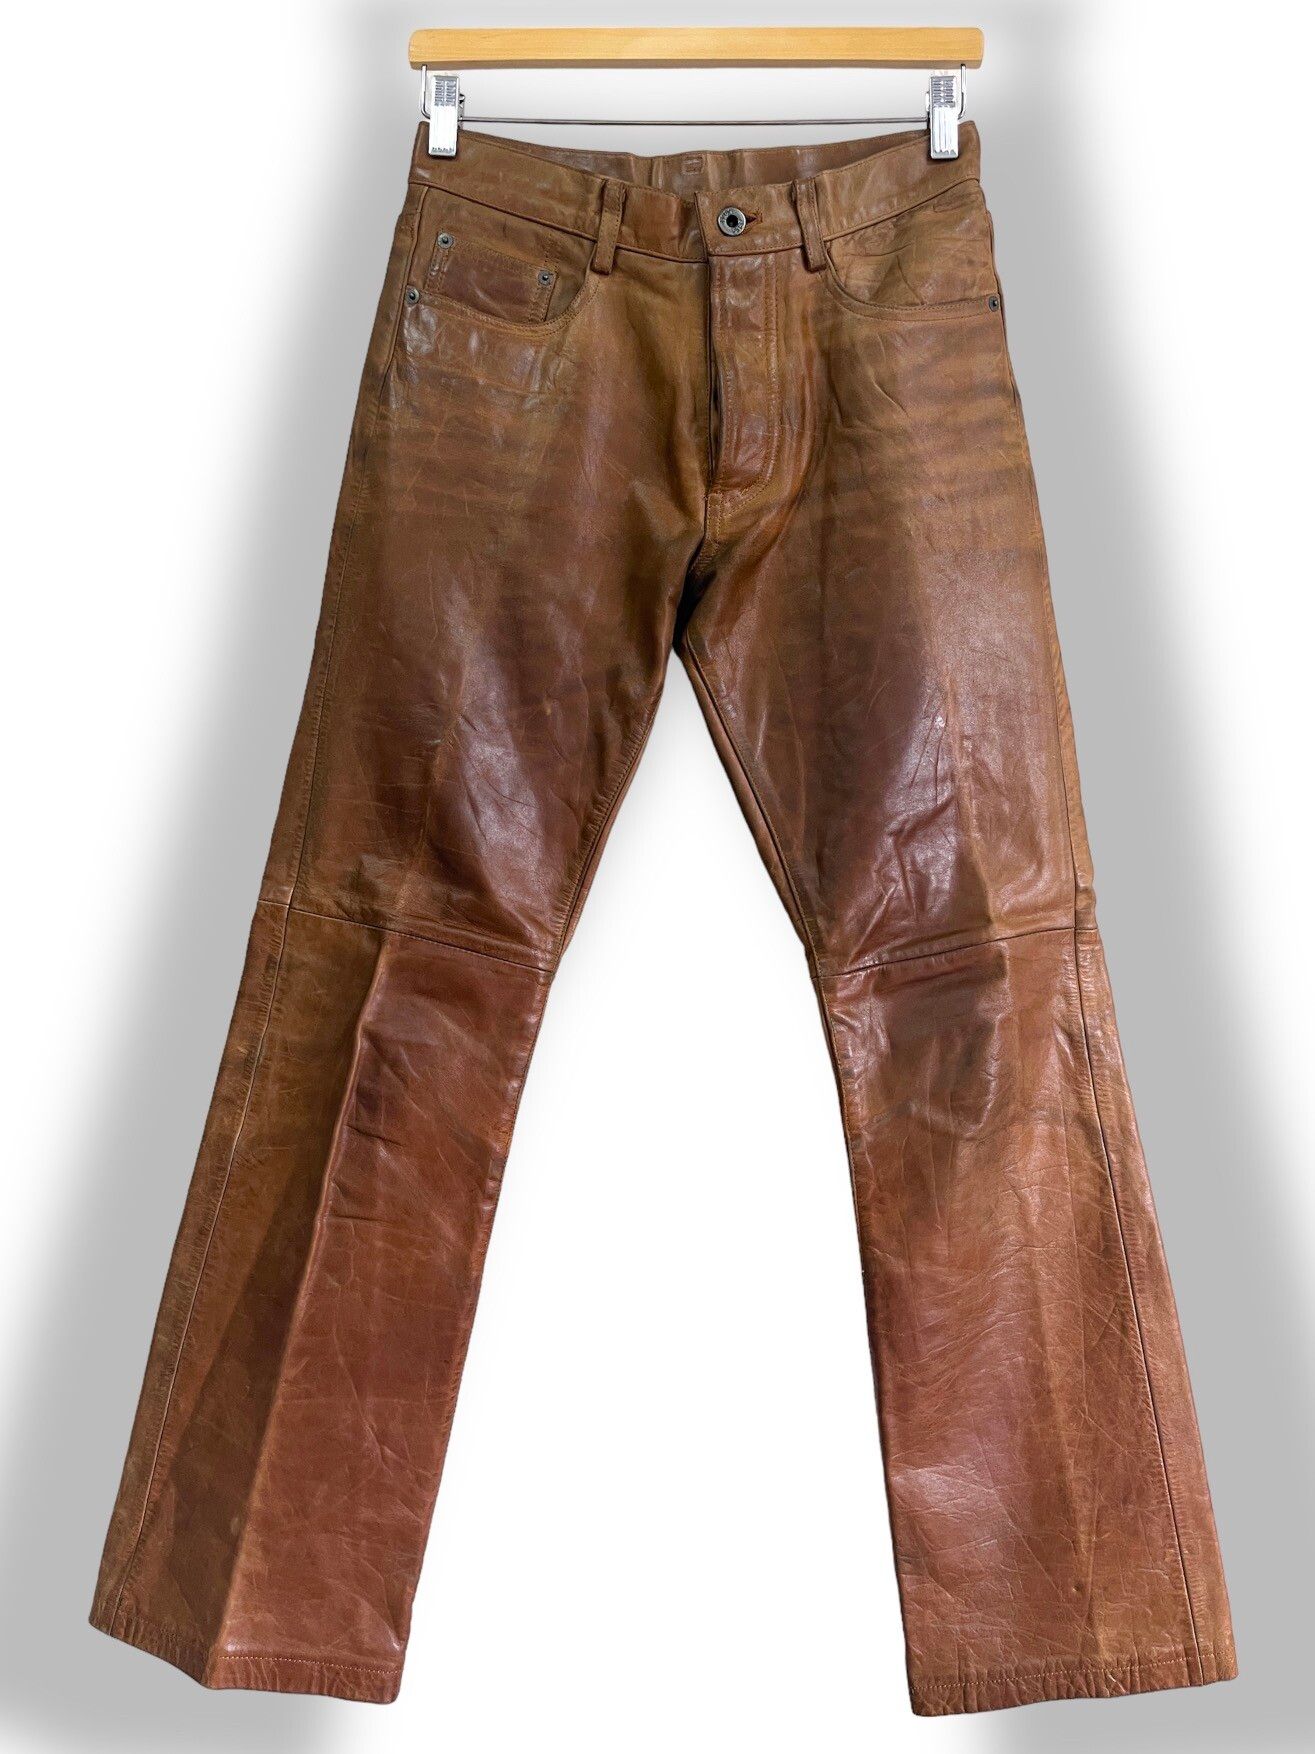 Genuine Leather - Japan 5351 Pour Les Homme Leather Pants - 1